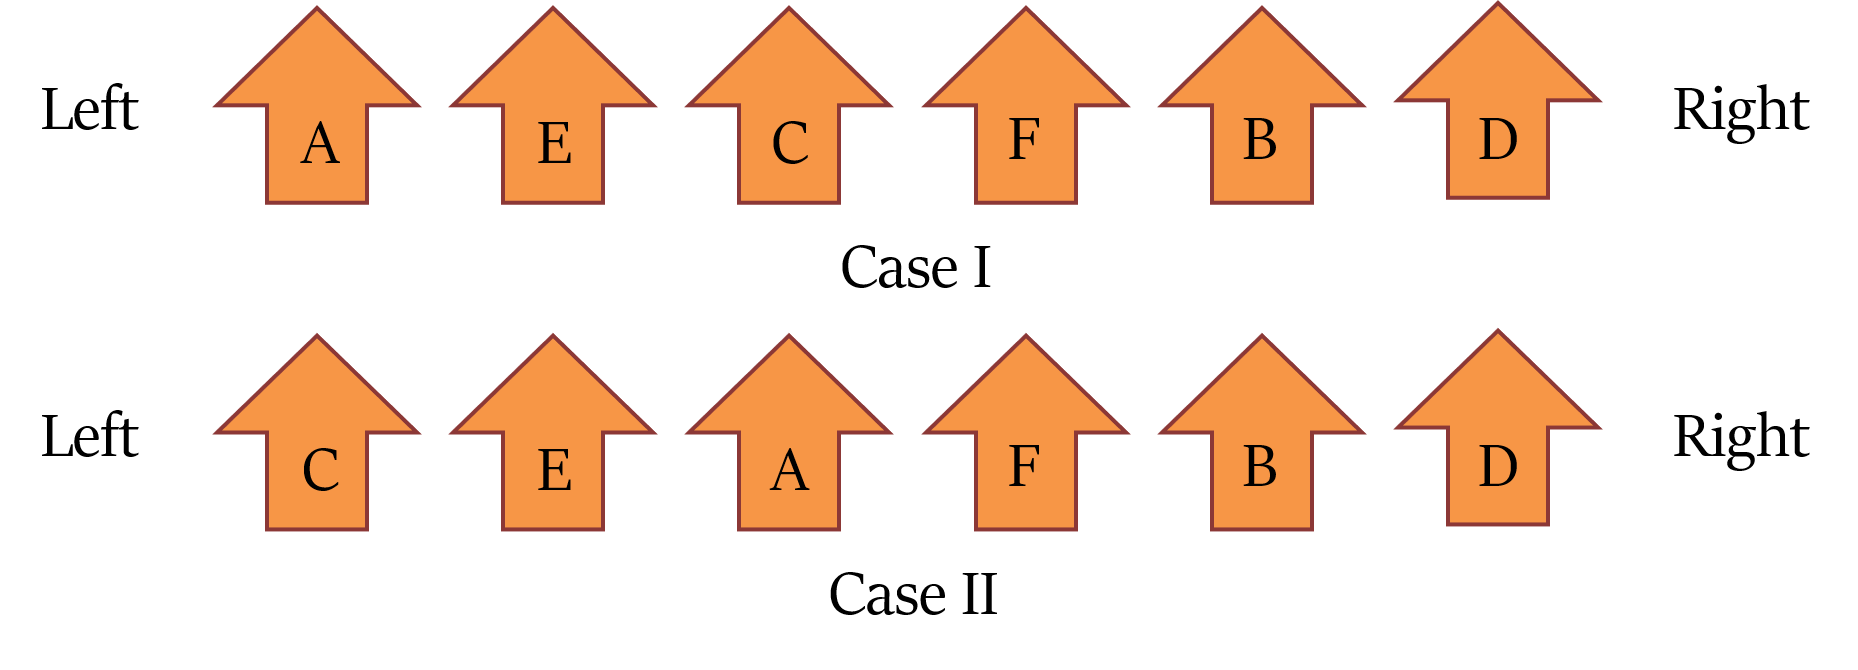 Linear arrangement